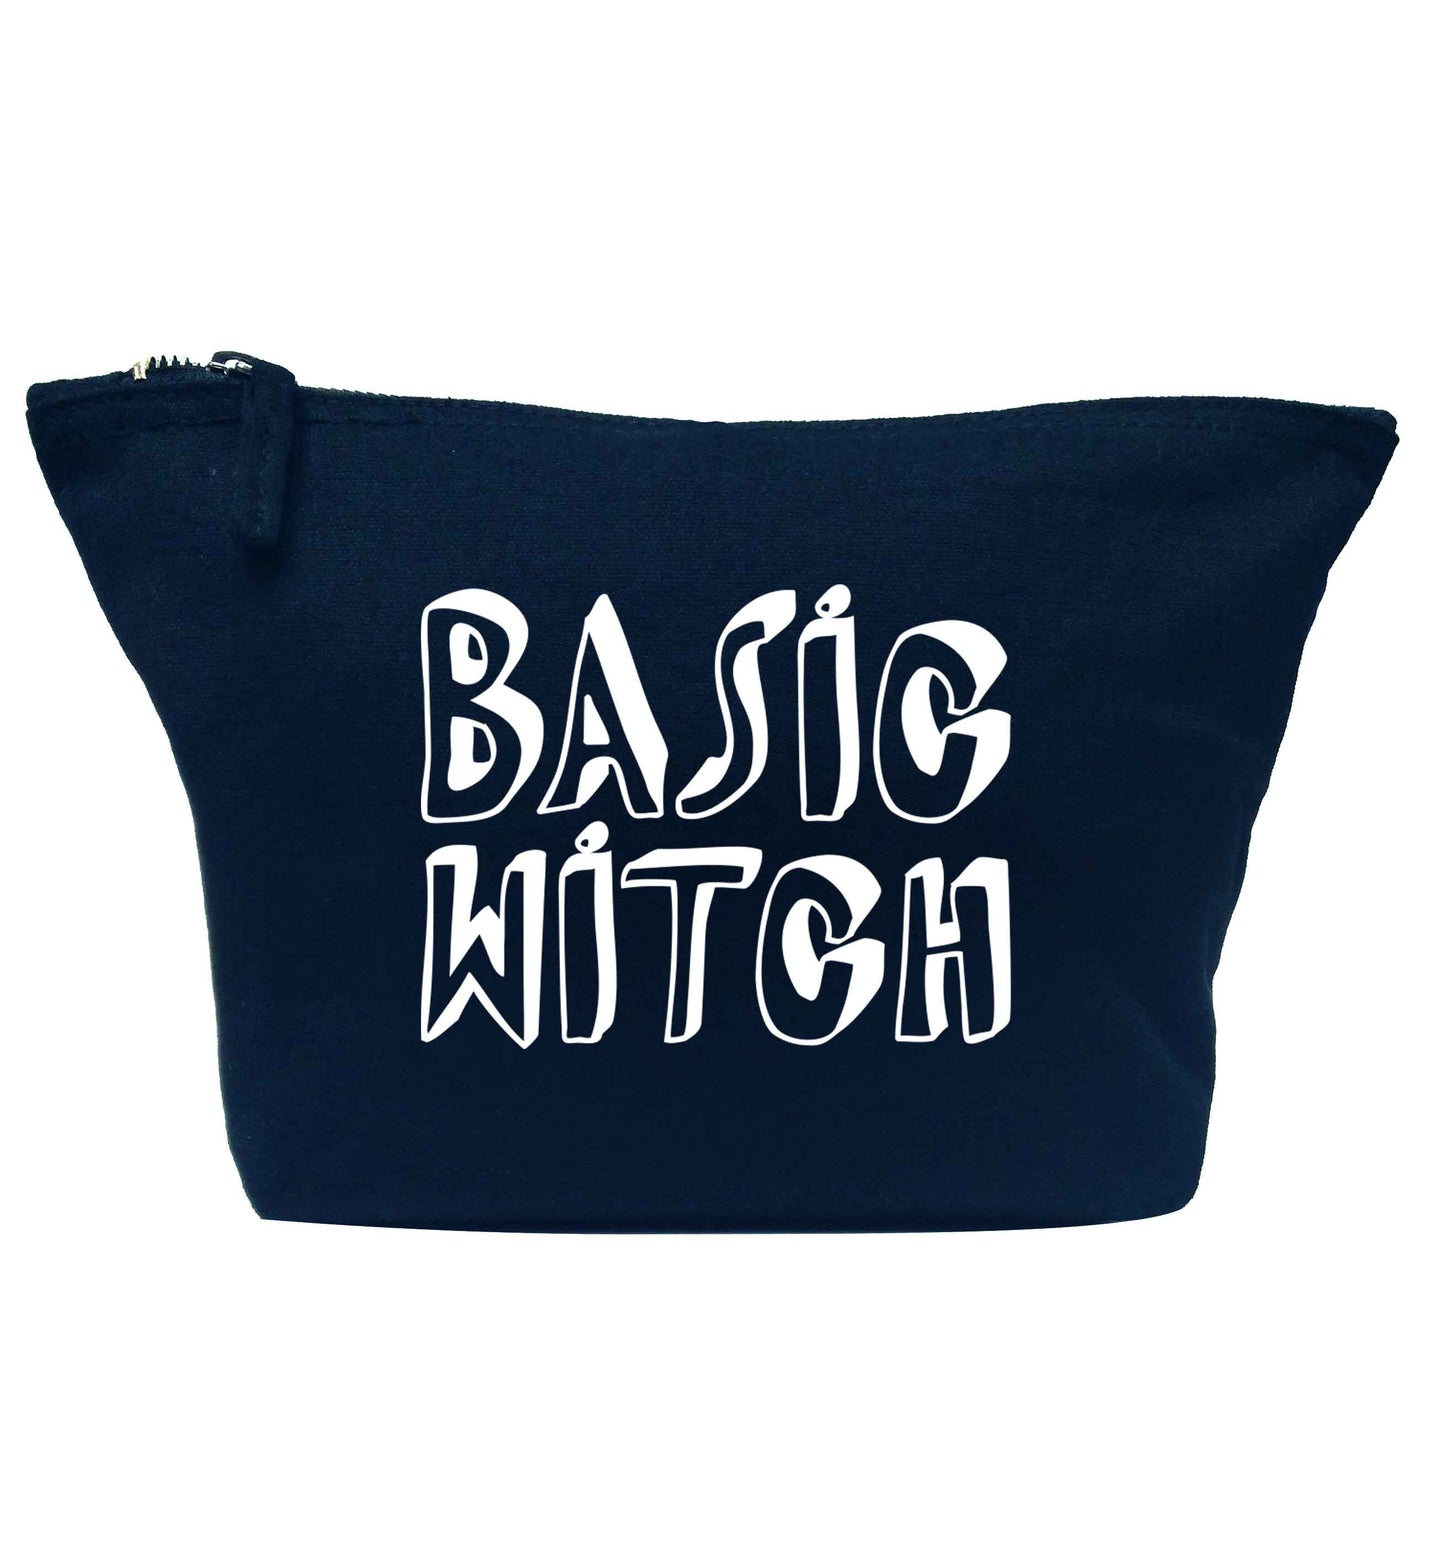 Basic witch navy makeup bag